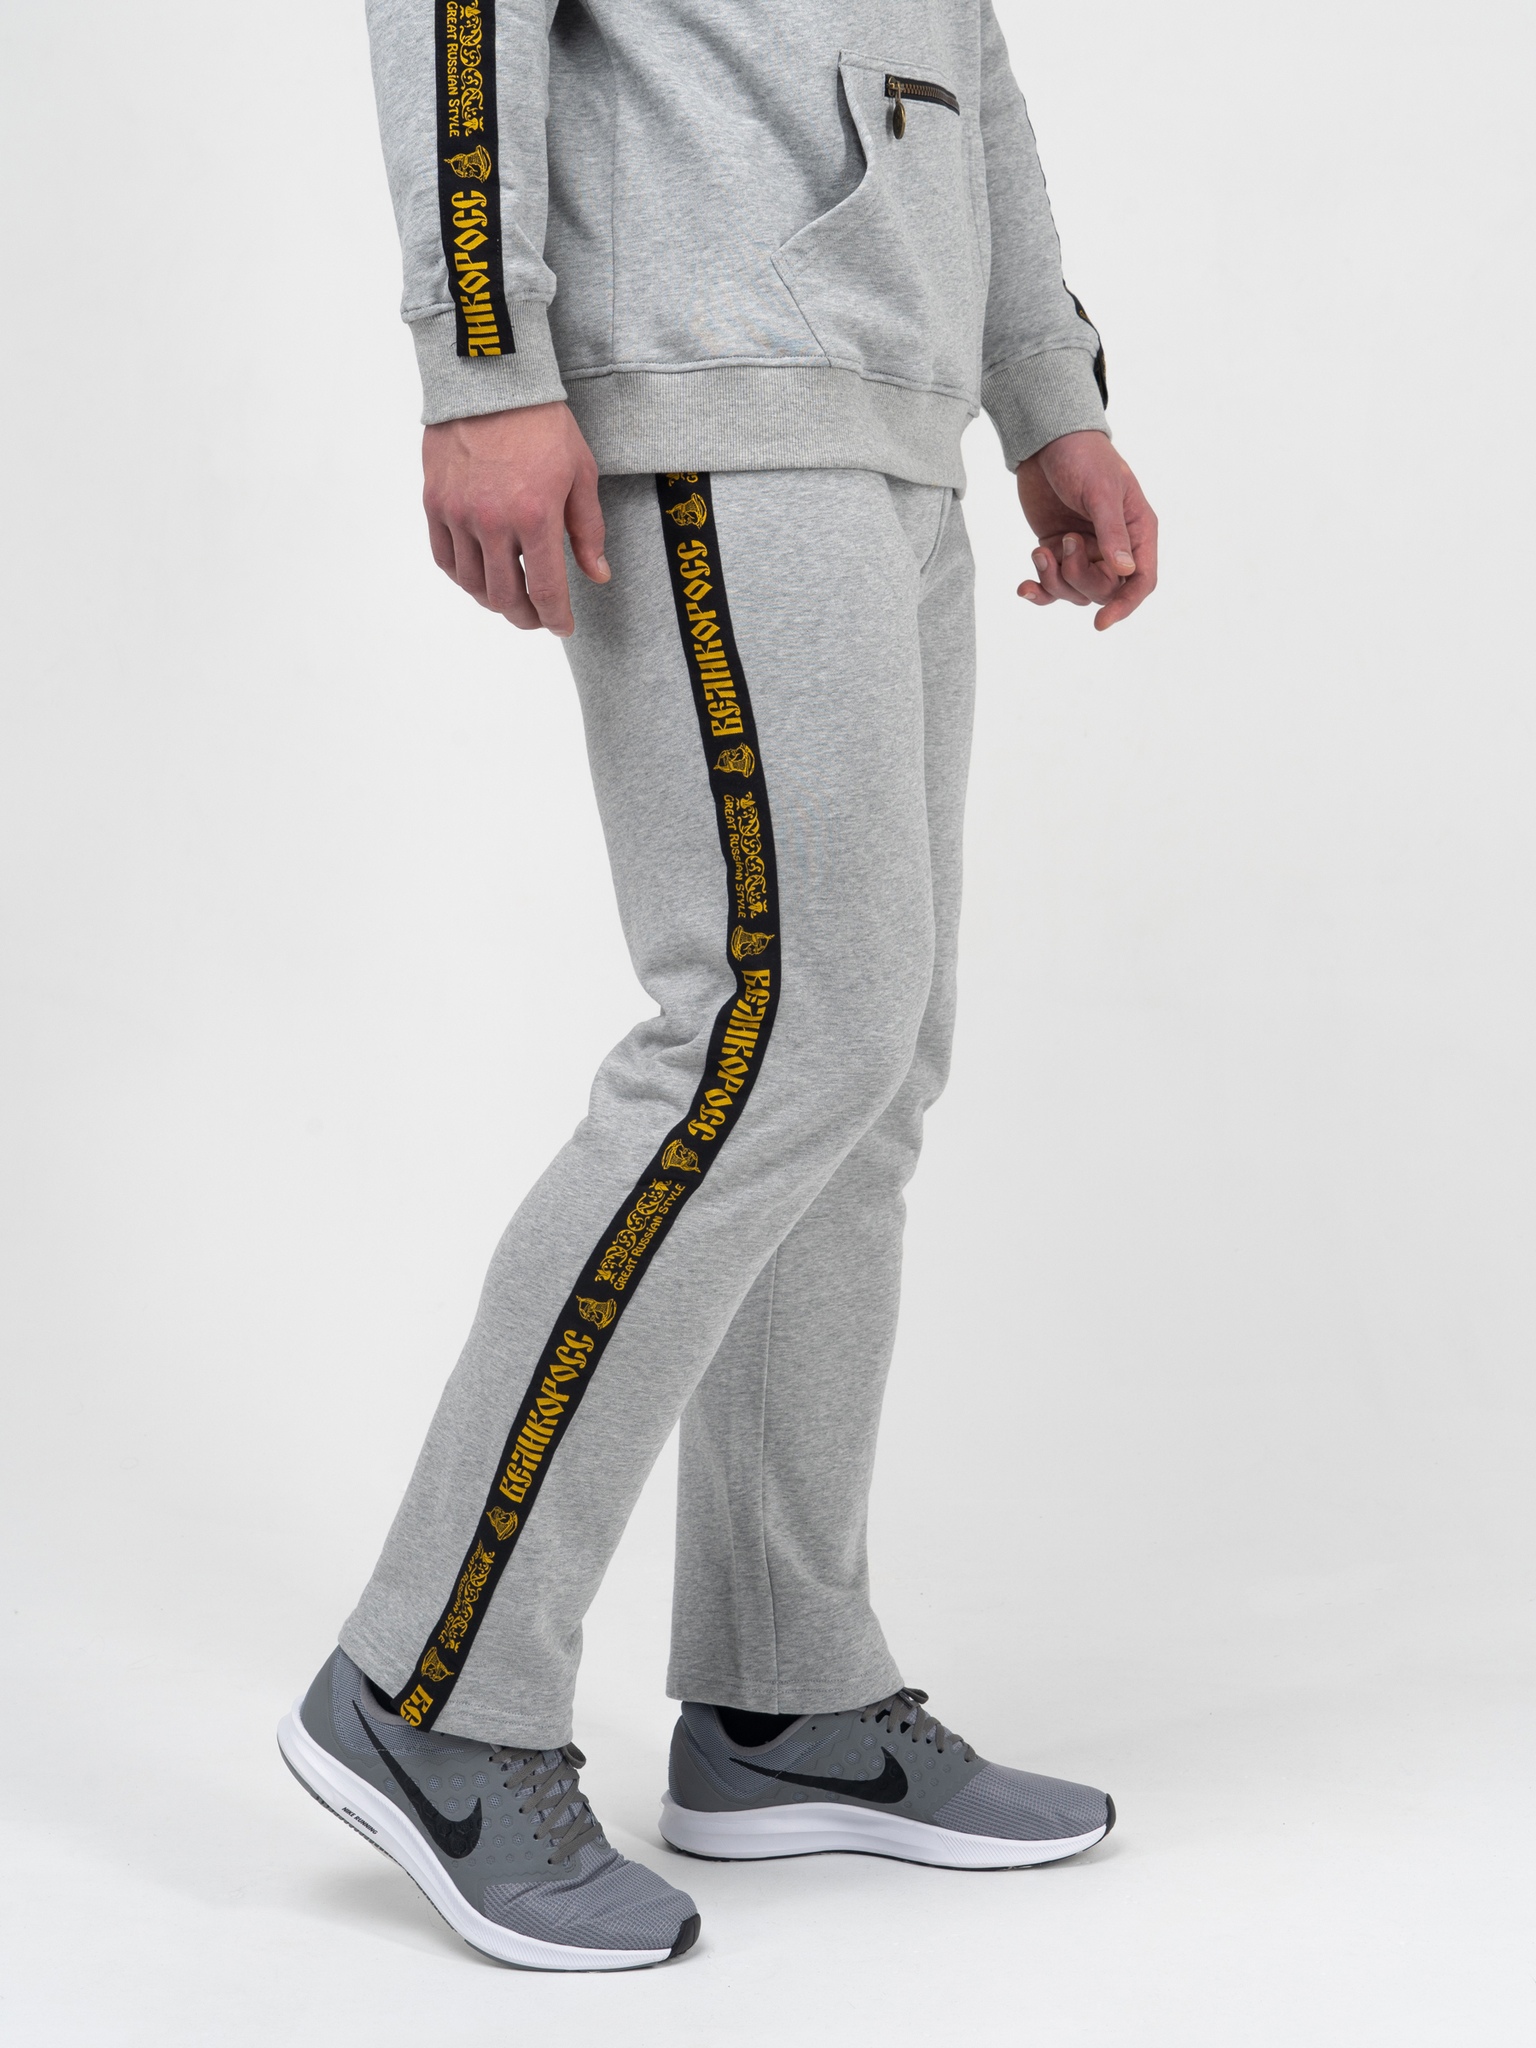 фото Спортивные брюки мужские великоросс bm серые 56 ru